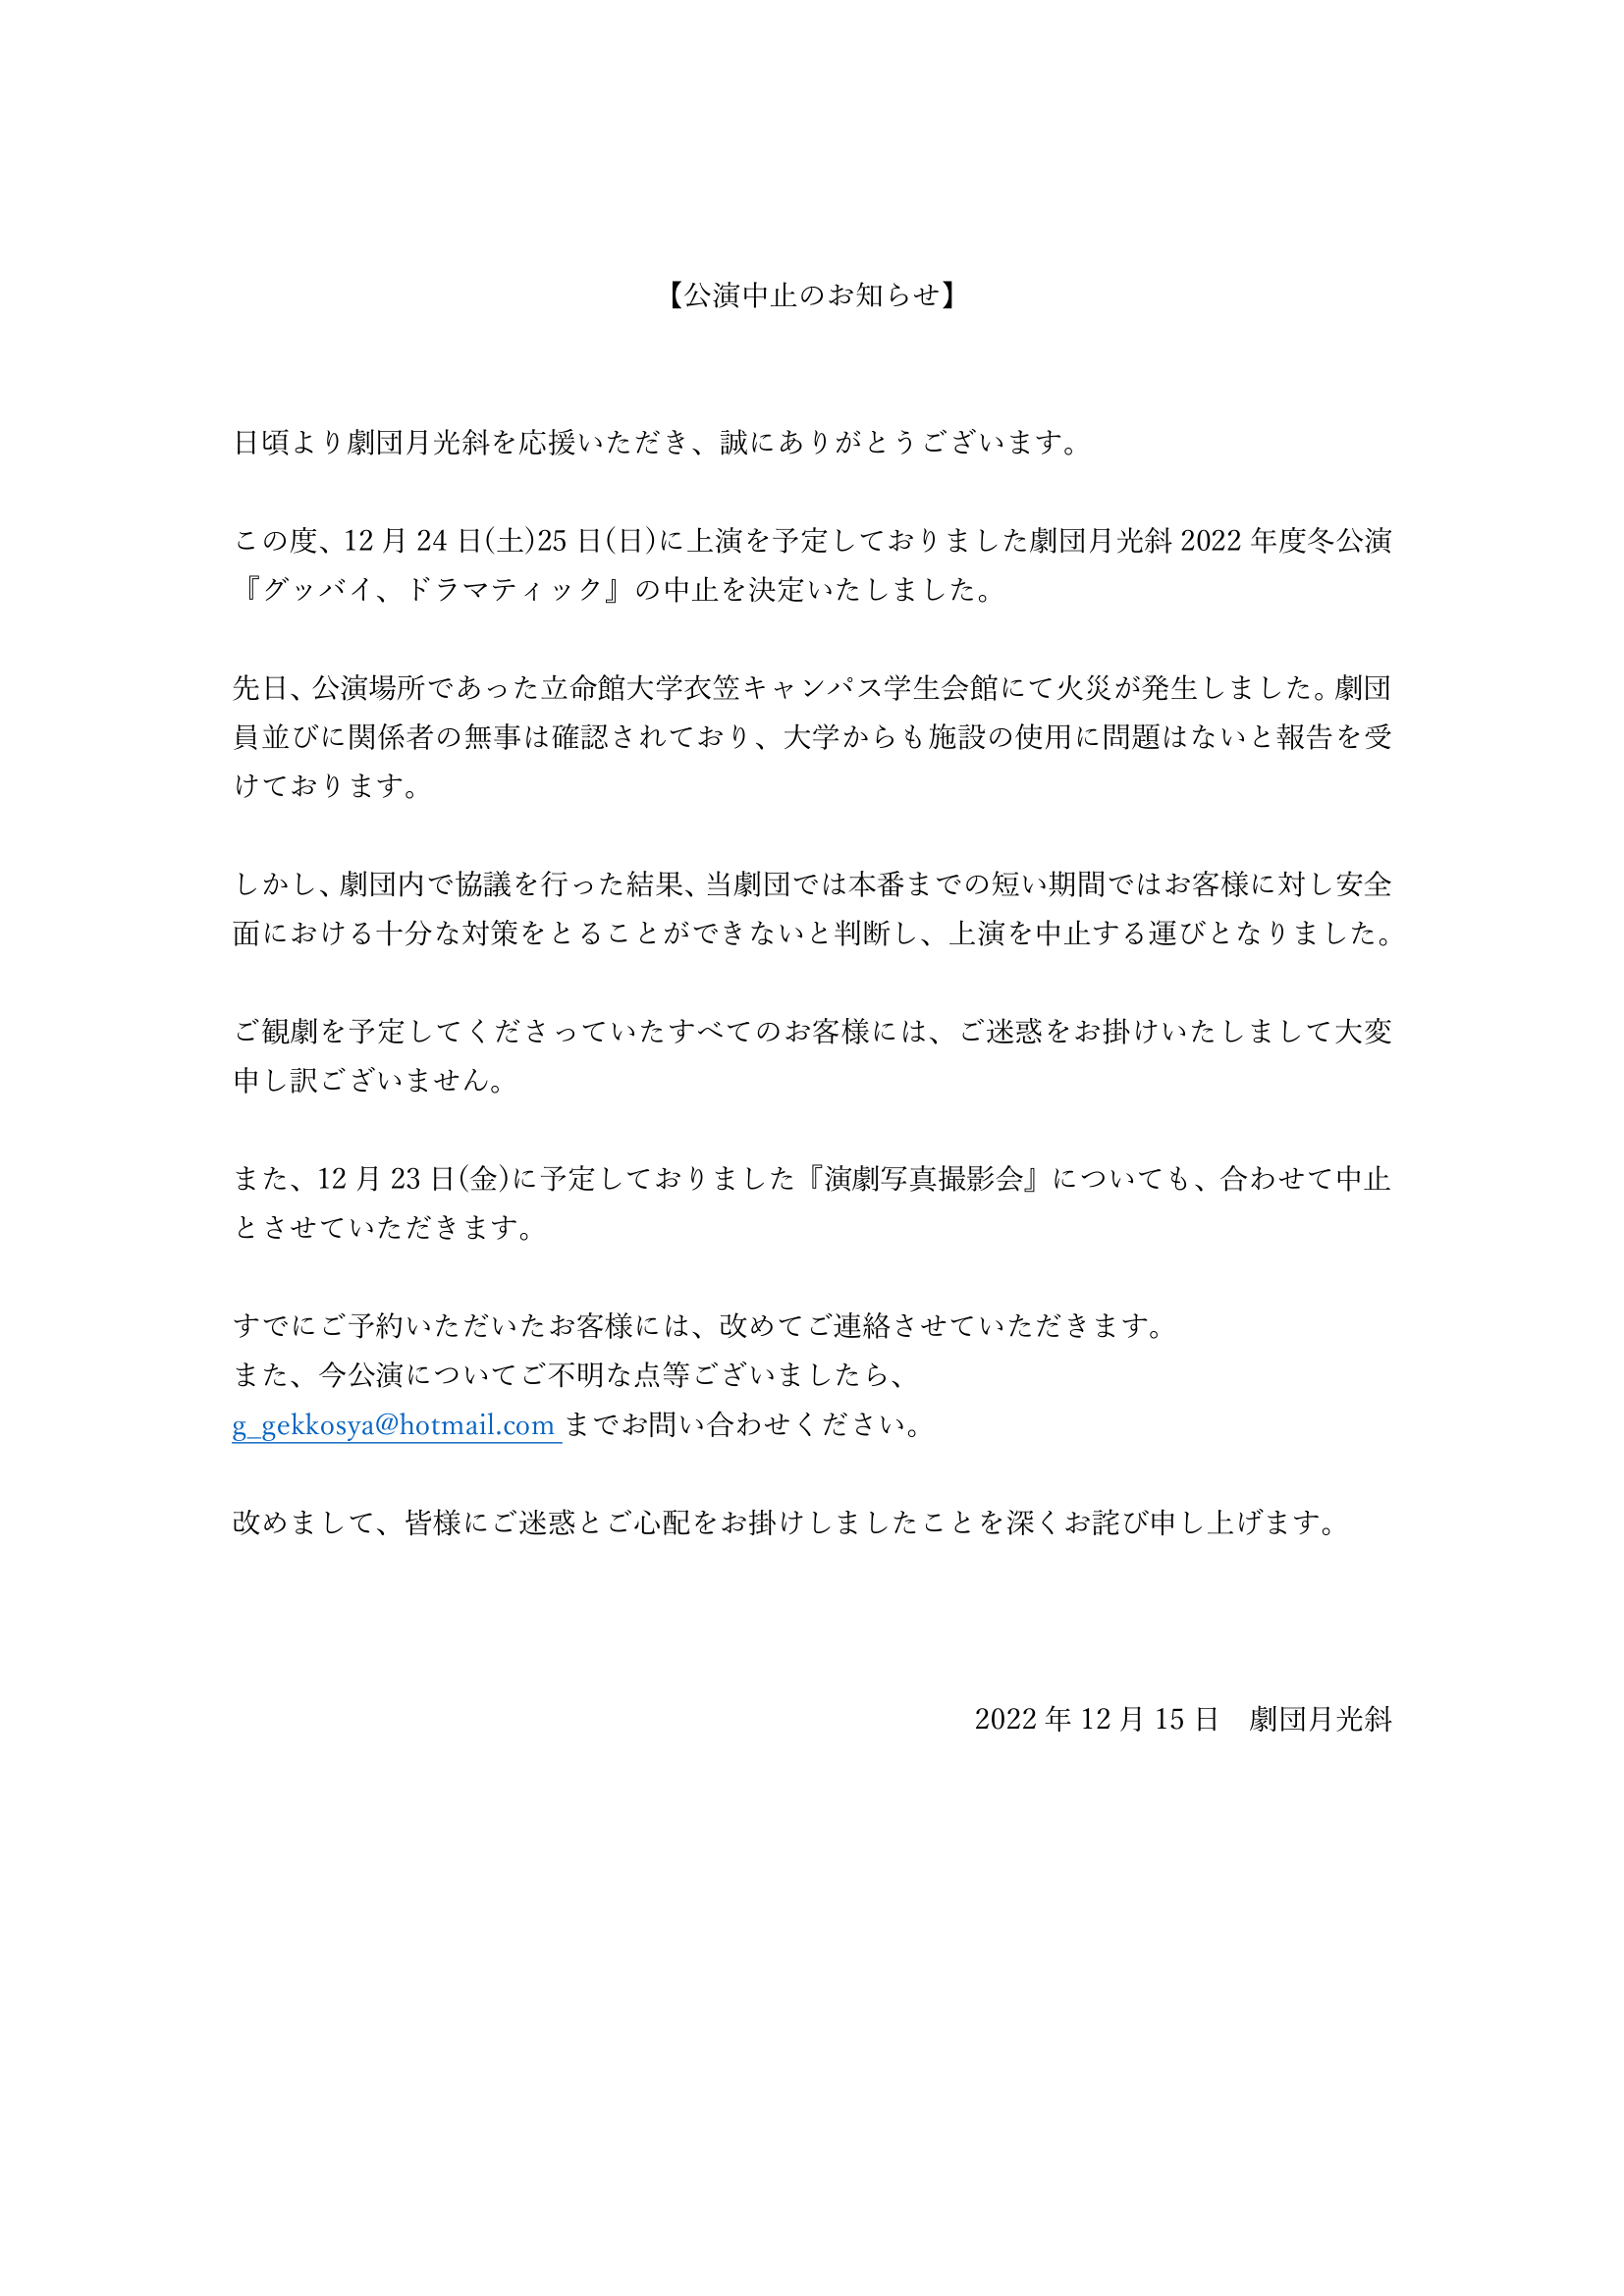 公演中止のお知らせ_完-1.png